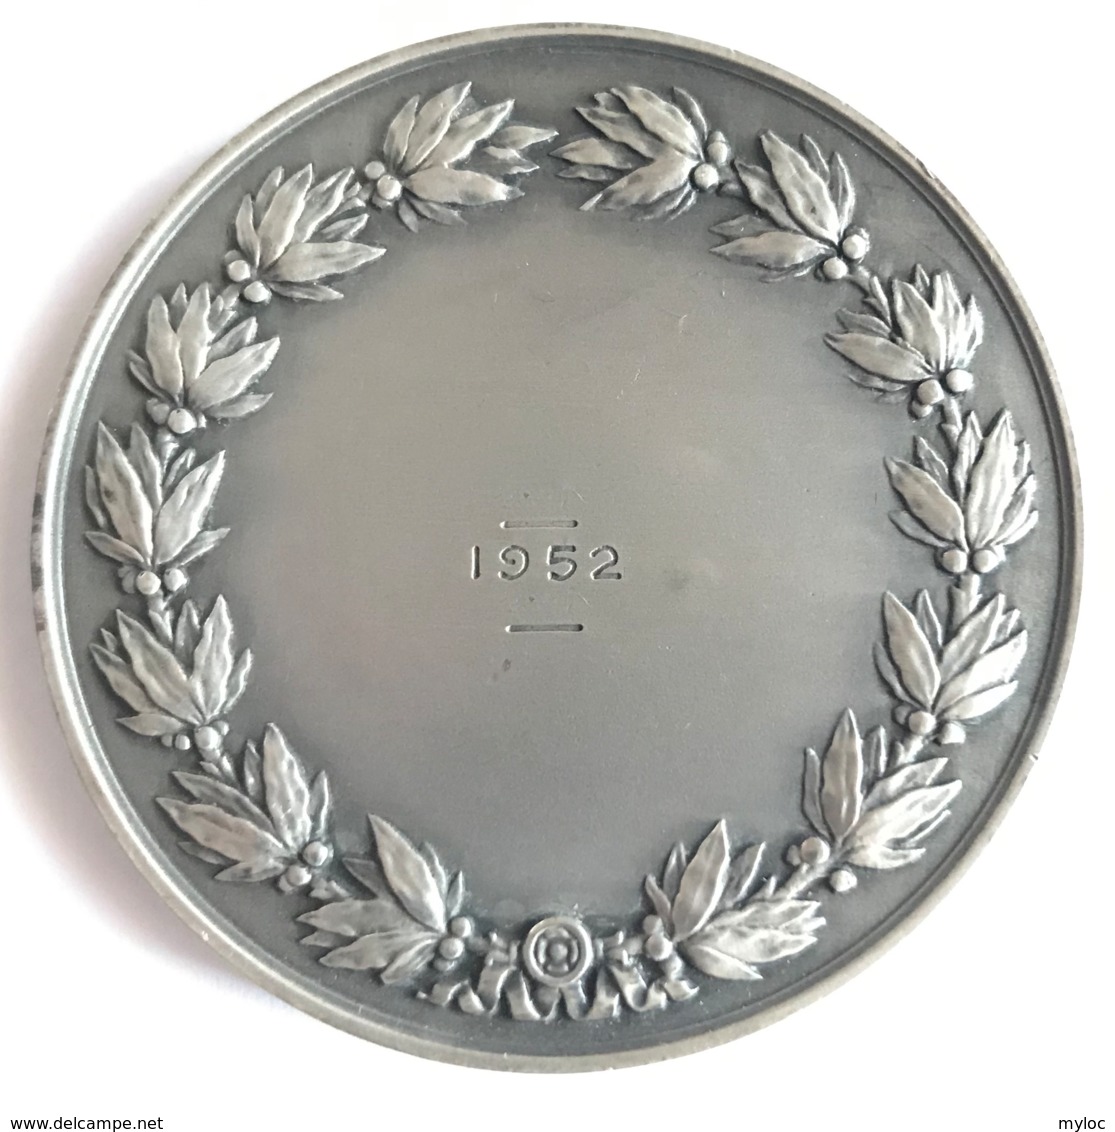 Médaille Assurances Compagnies Du Soleil. R.B. Baron. 1952. Poinçon 1 Argent. Diam. 50mm - 65gr - Professionnels / De Société